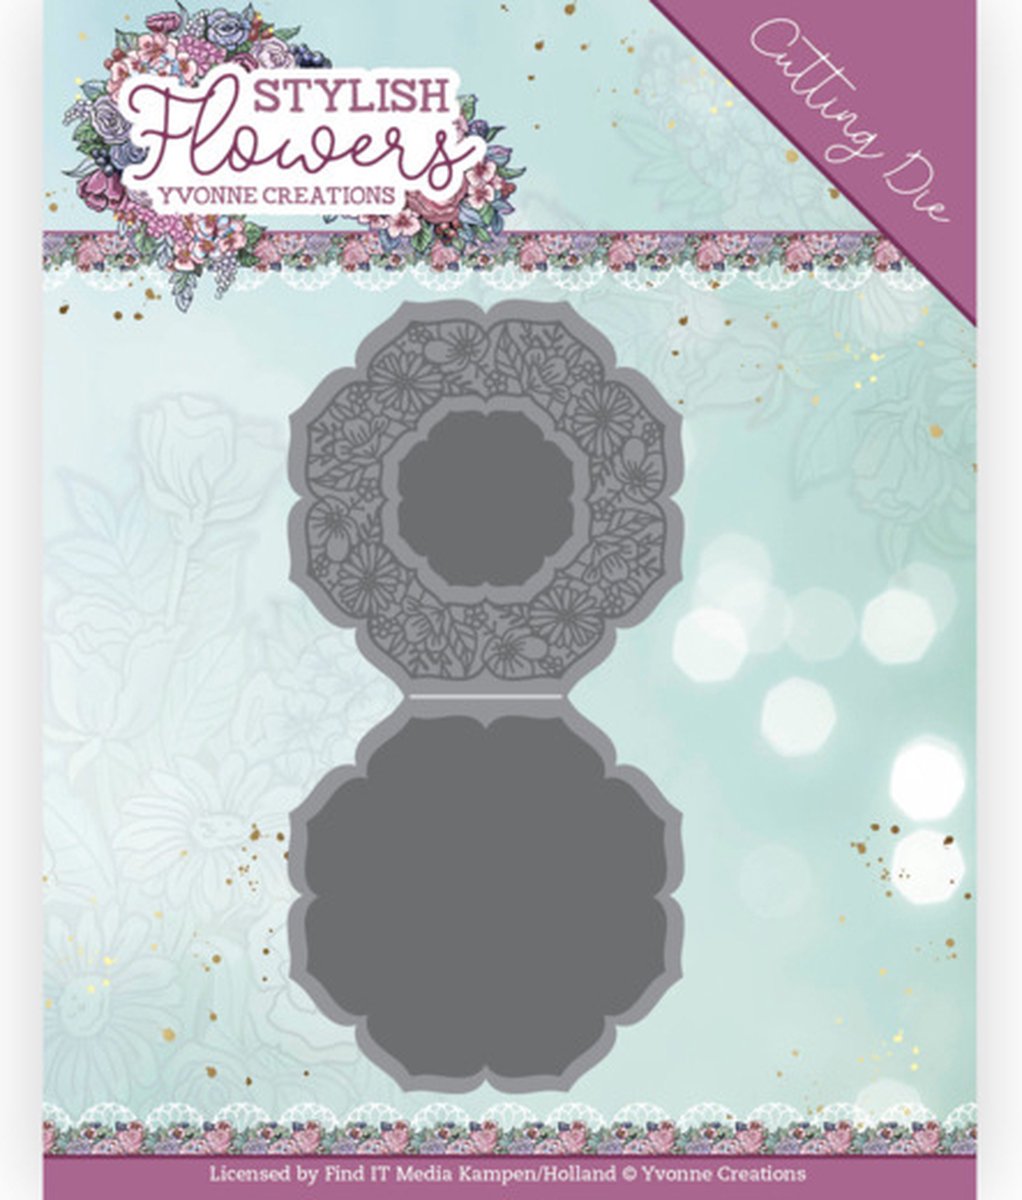 Dies - Yvonne Creations - Stylisch Flowers - Octagon Flower Card